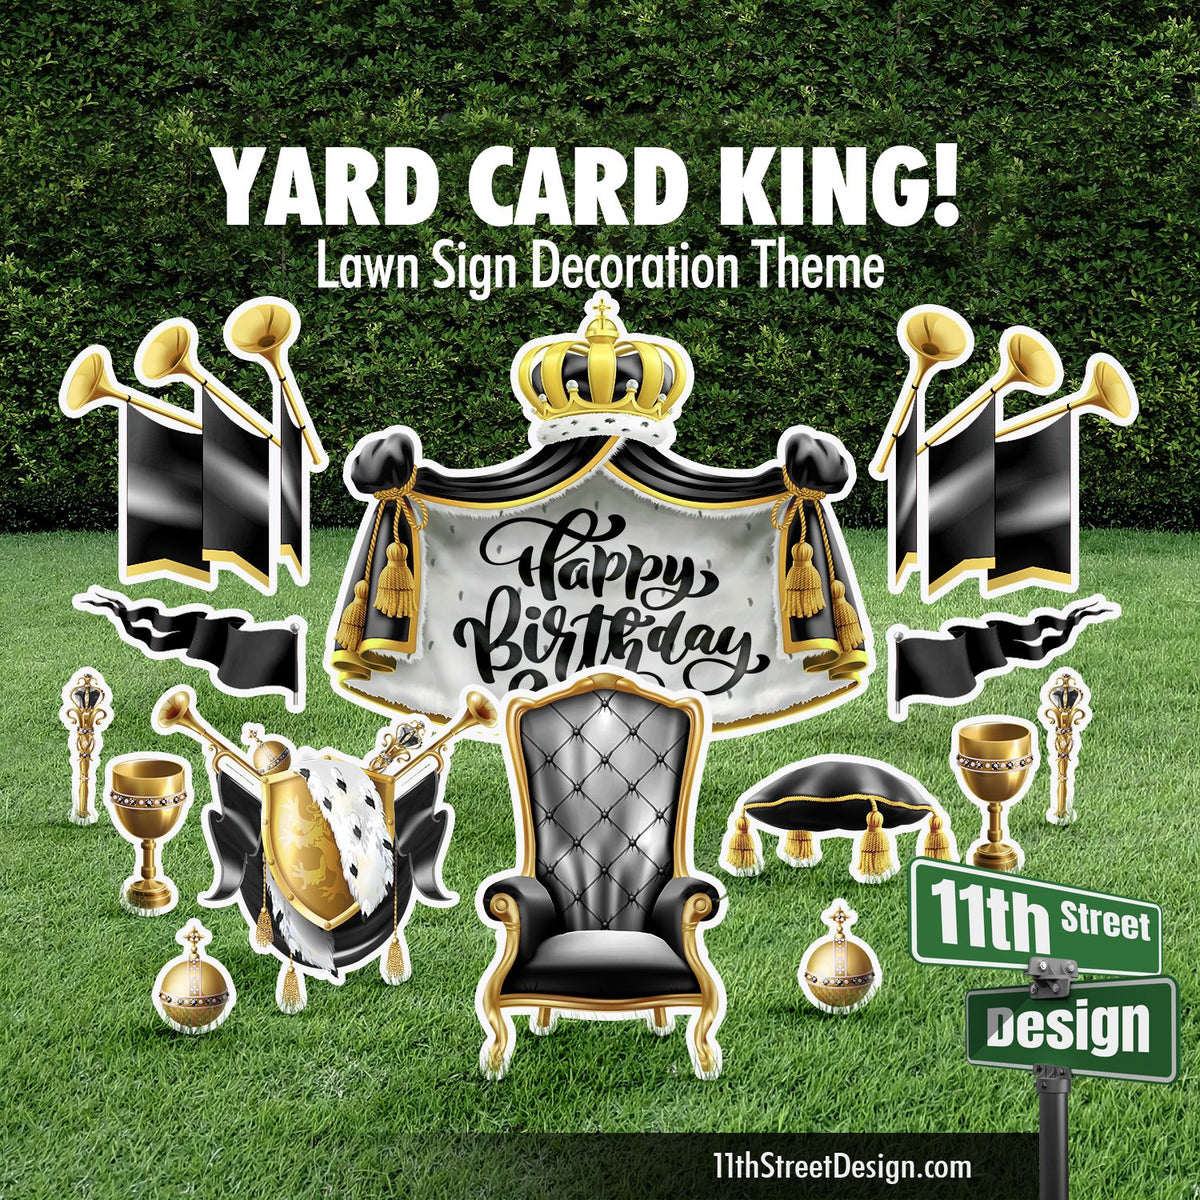 Black Yard Card King Set